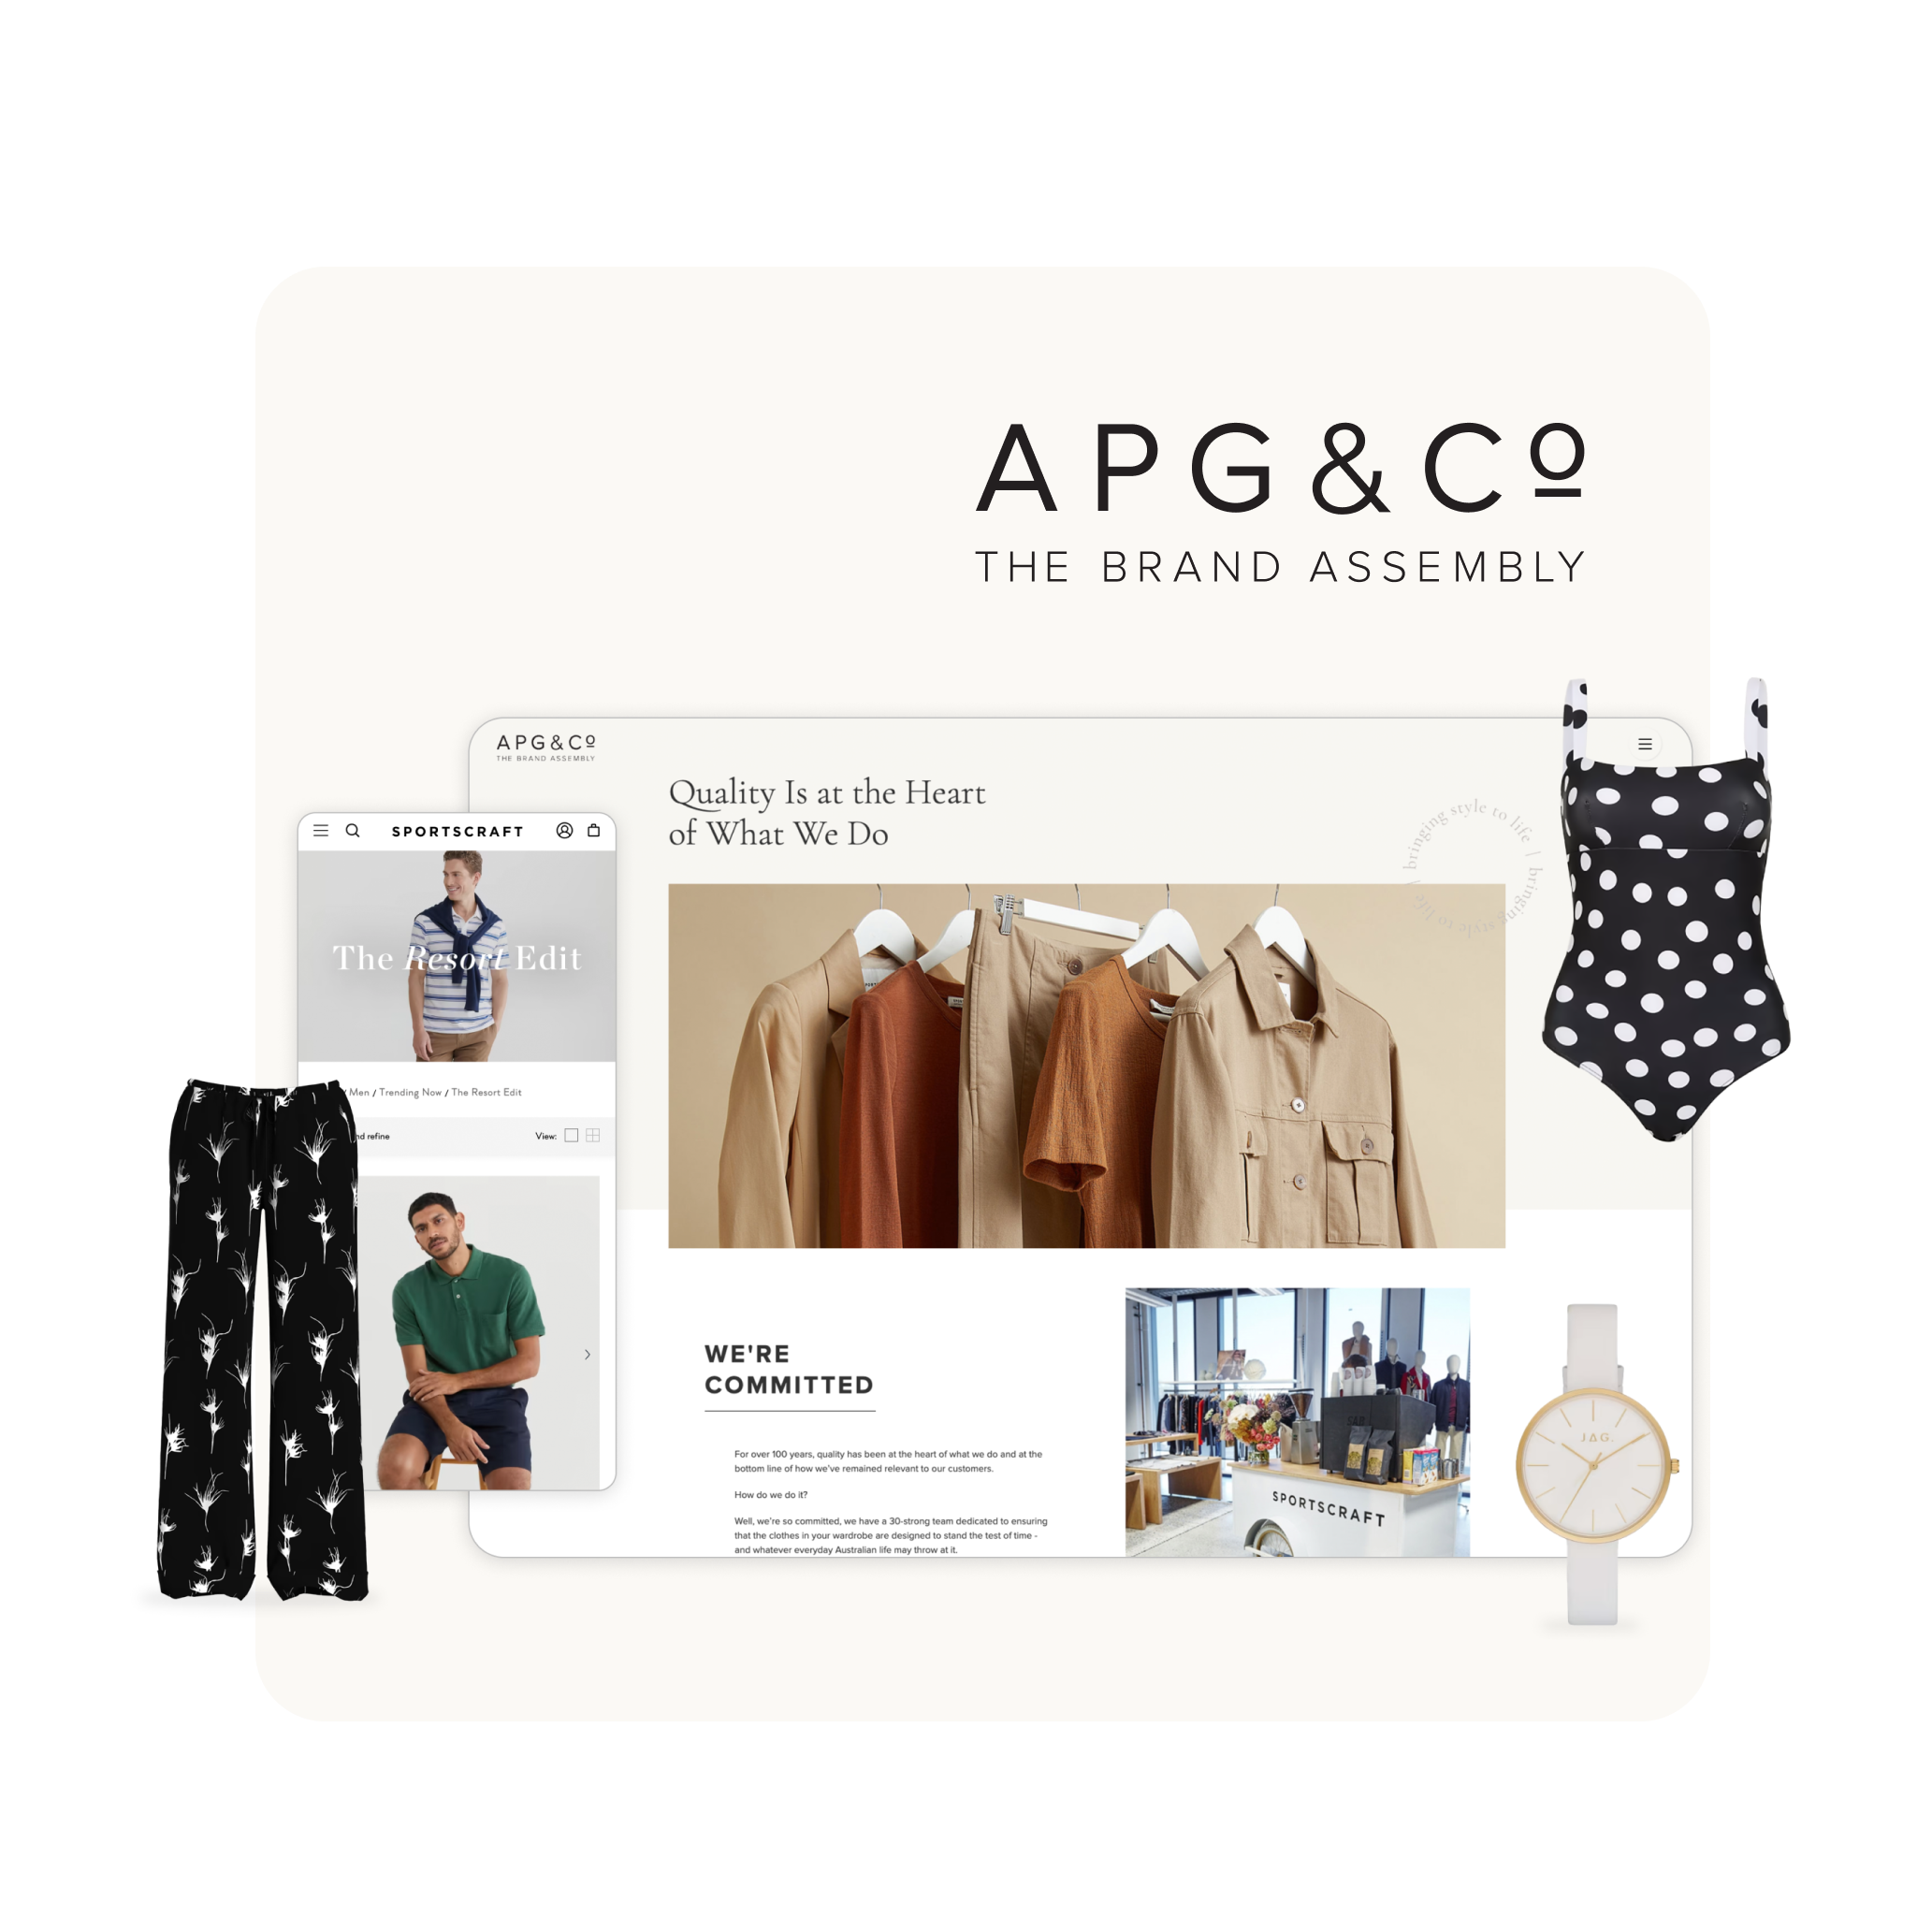 AGP&Co